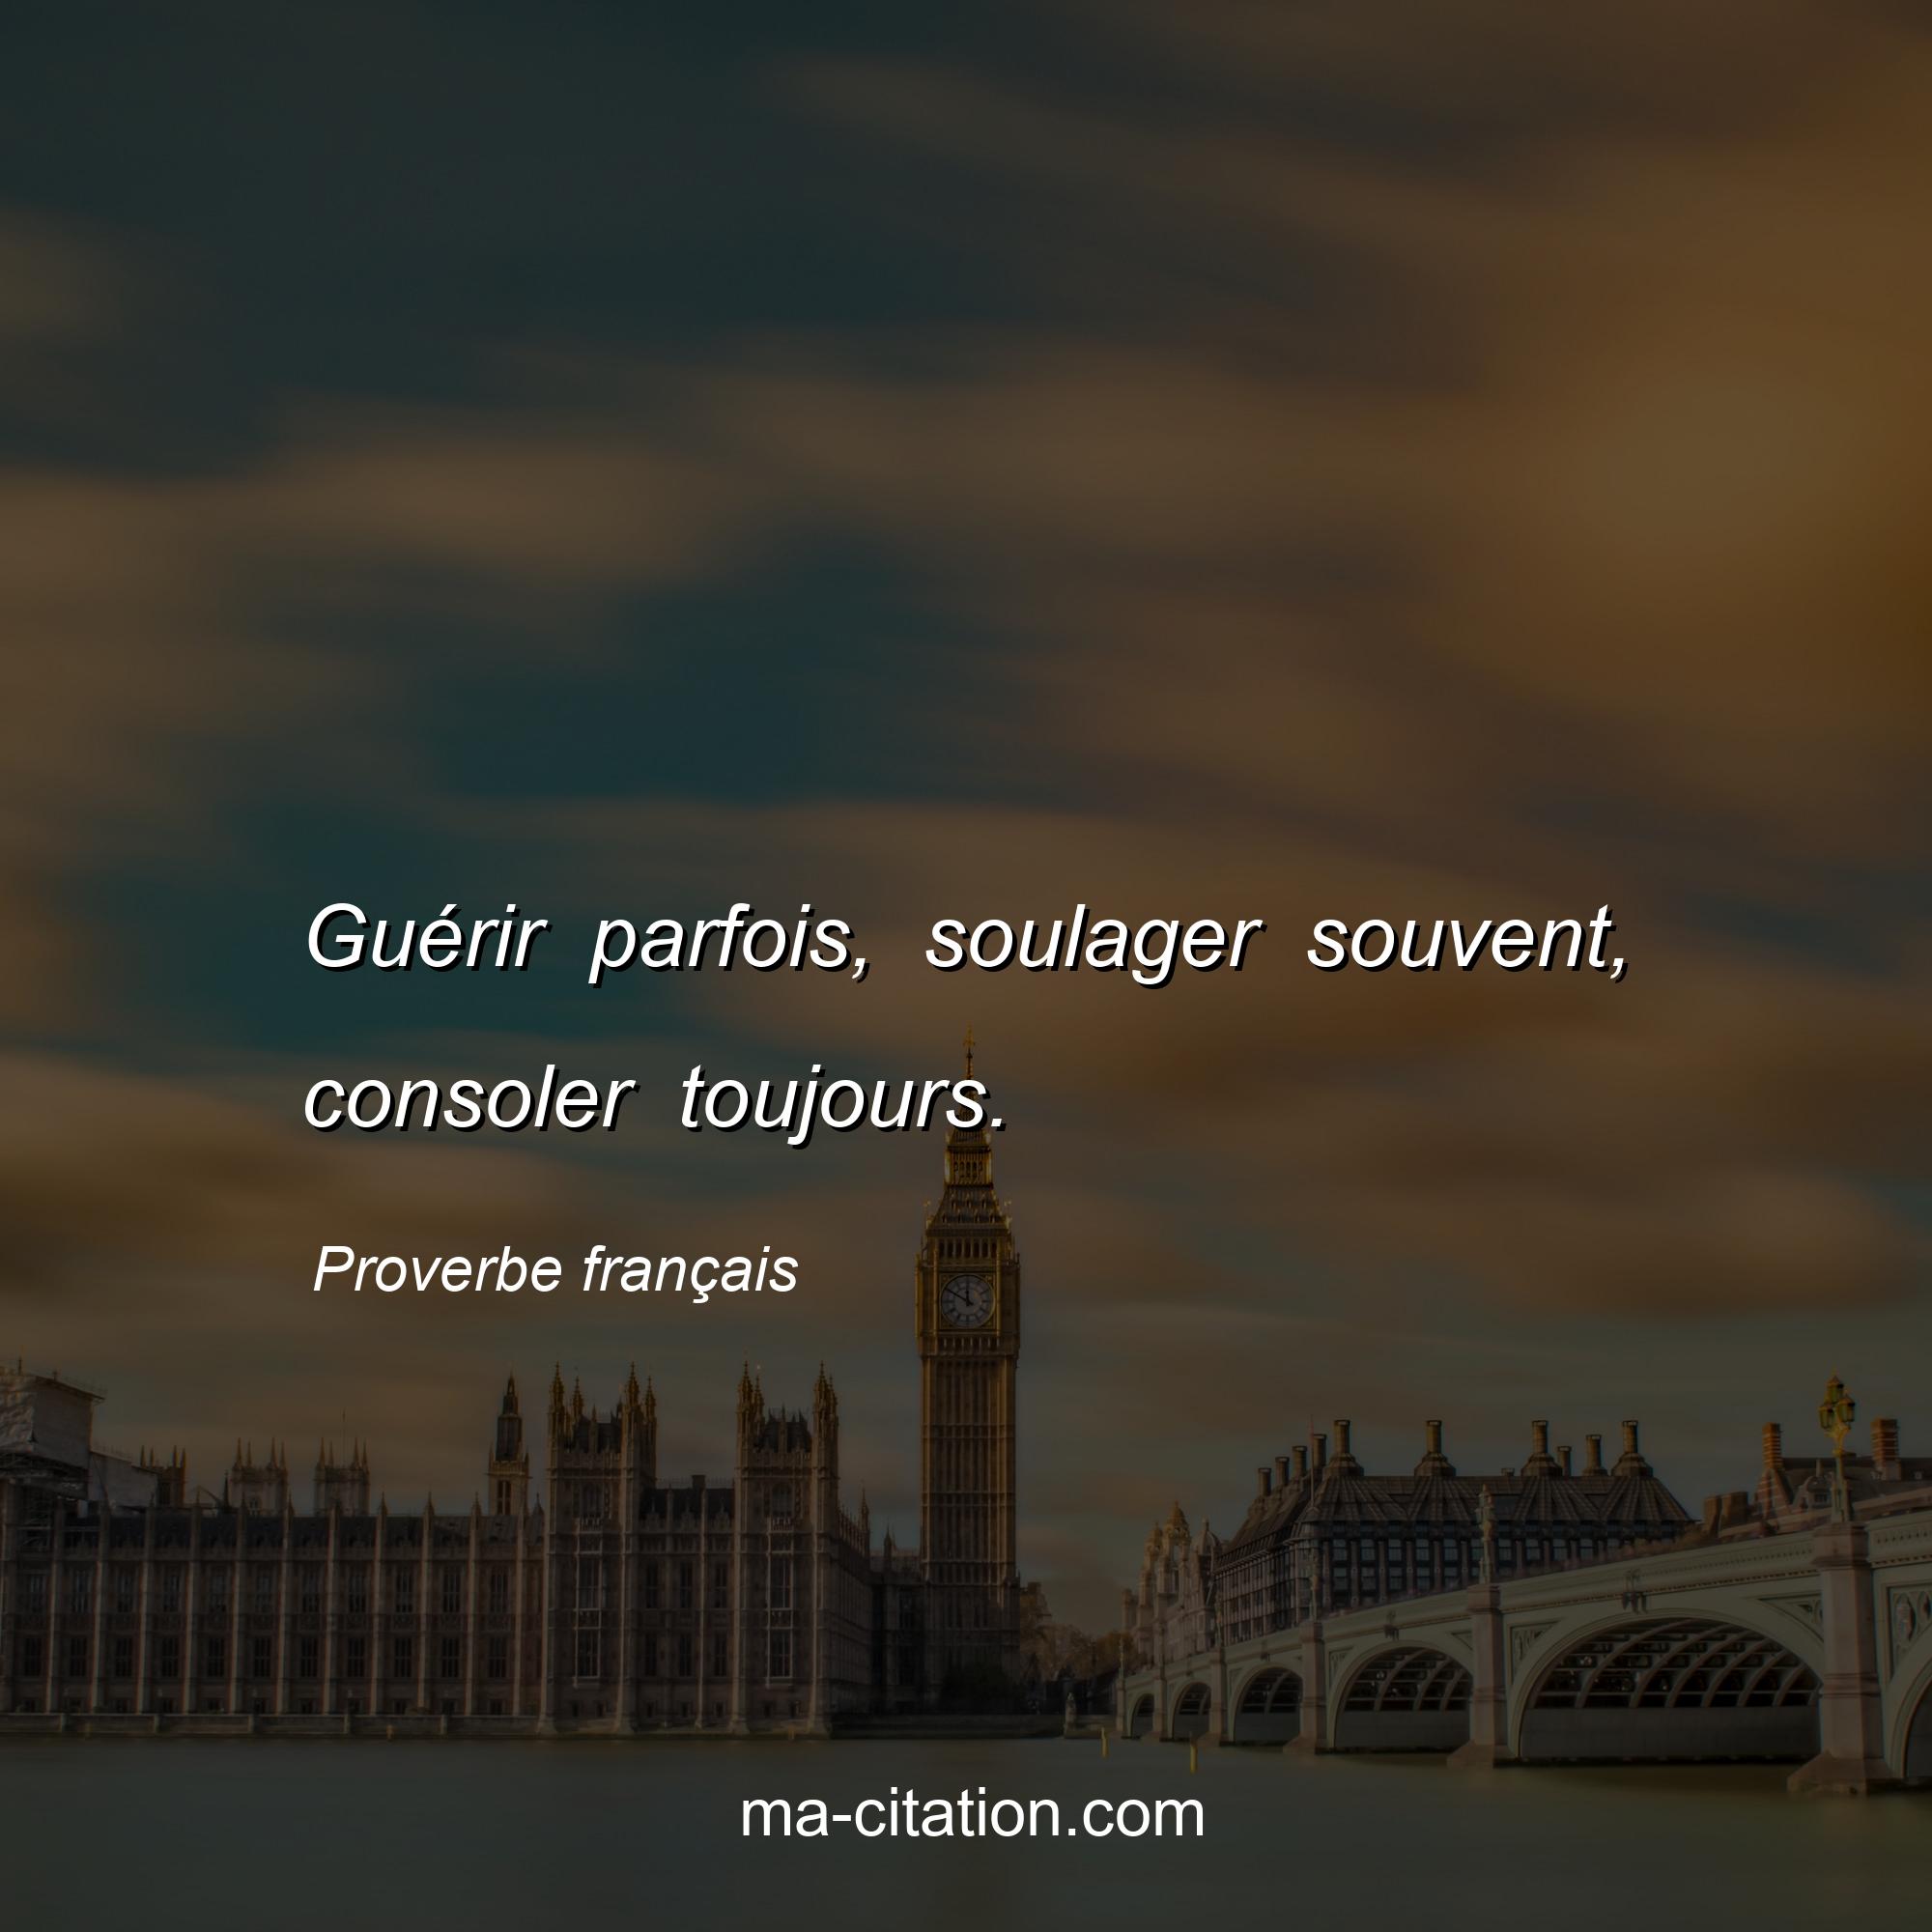 Proverbe français : Guérir parfois, soulager souvent, consoler toujours.